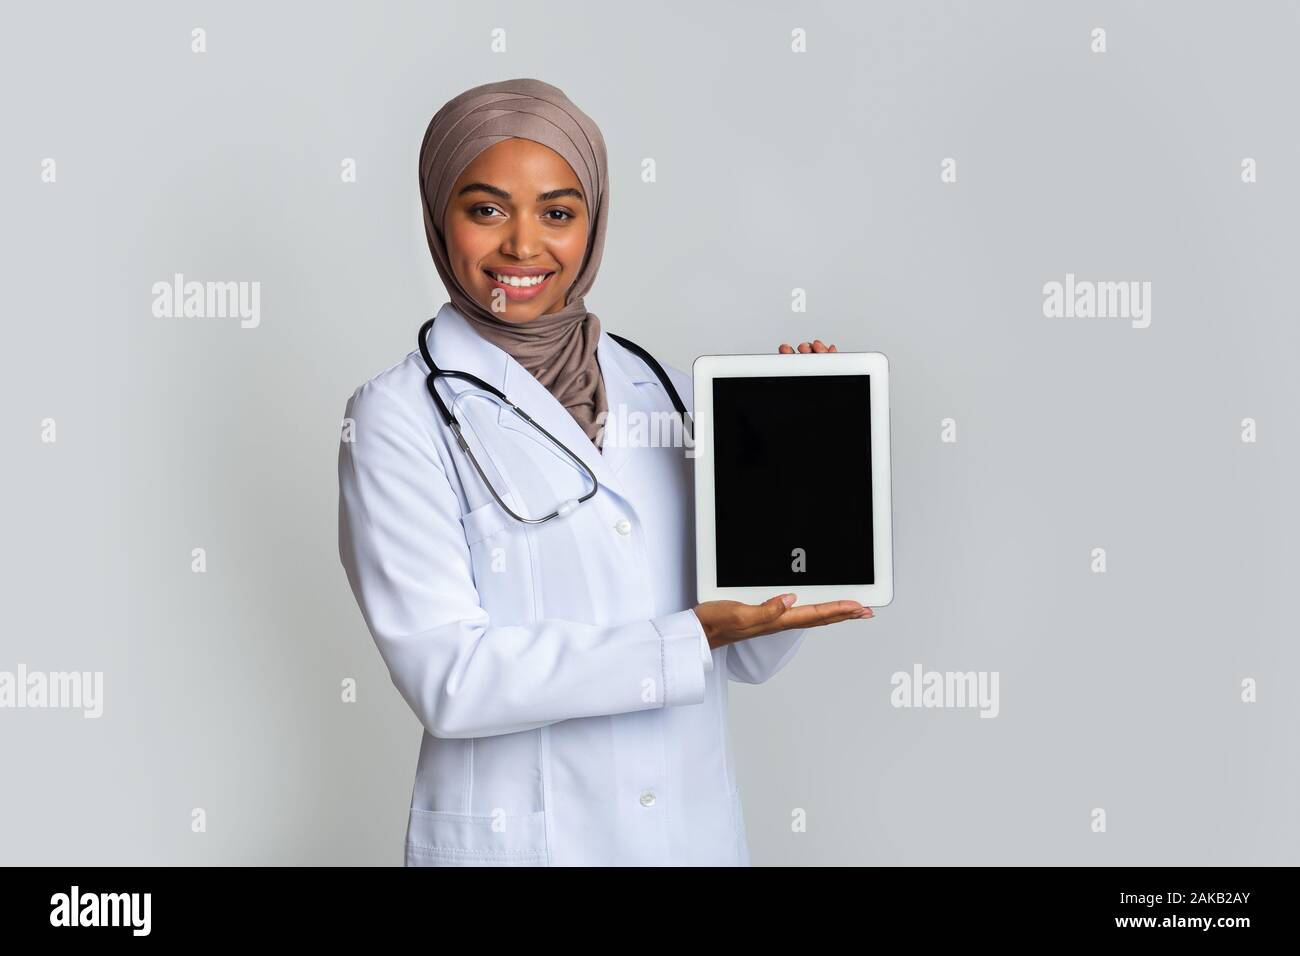 Pharmacie en ligne concept. Femme médecin musulmane noire holding digital tablet noir avec écran vide pour immersive, posant sur fond gris, l'espace libre Banque D'Images